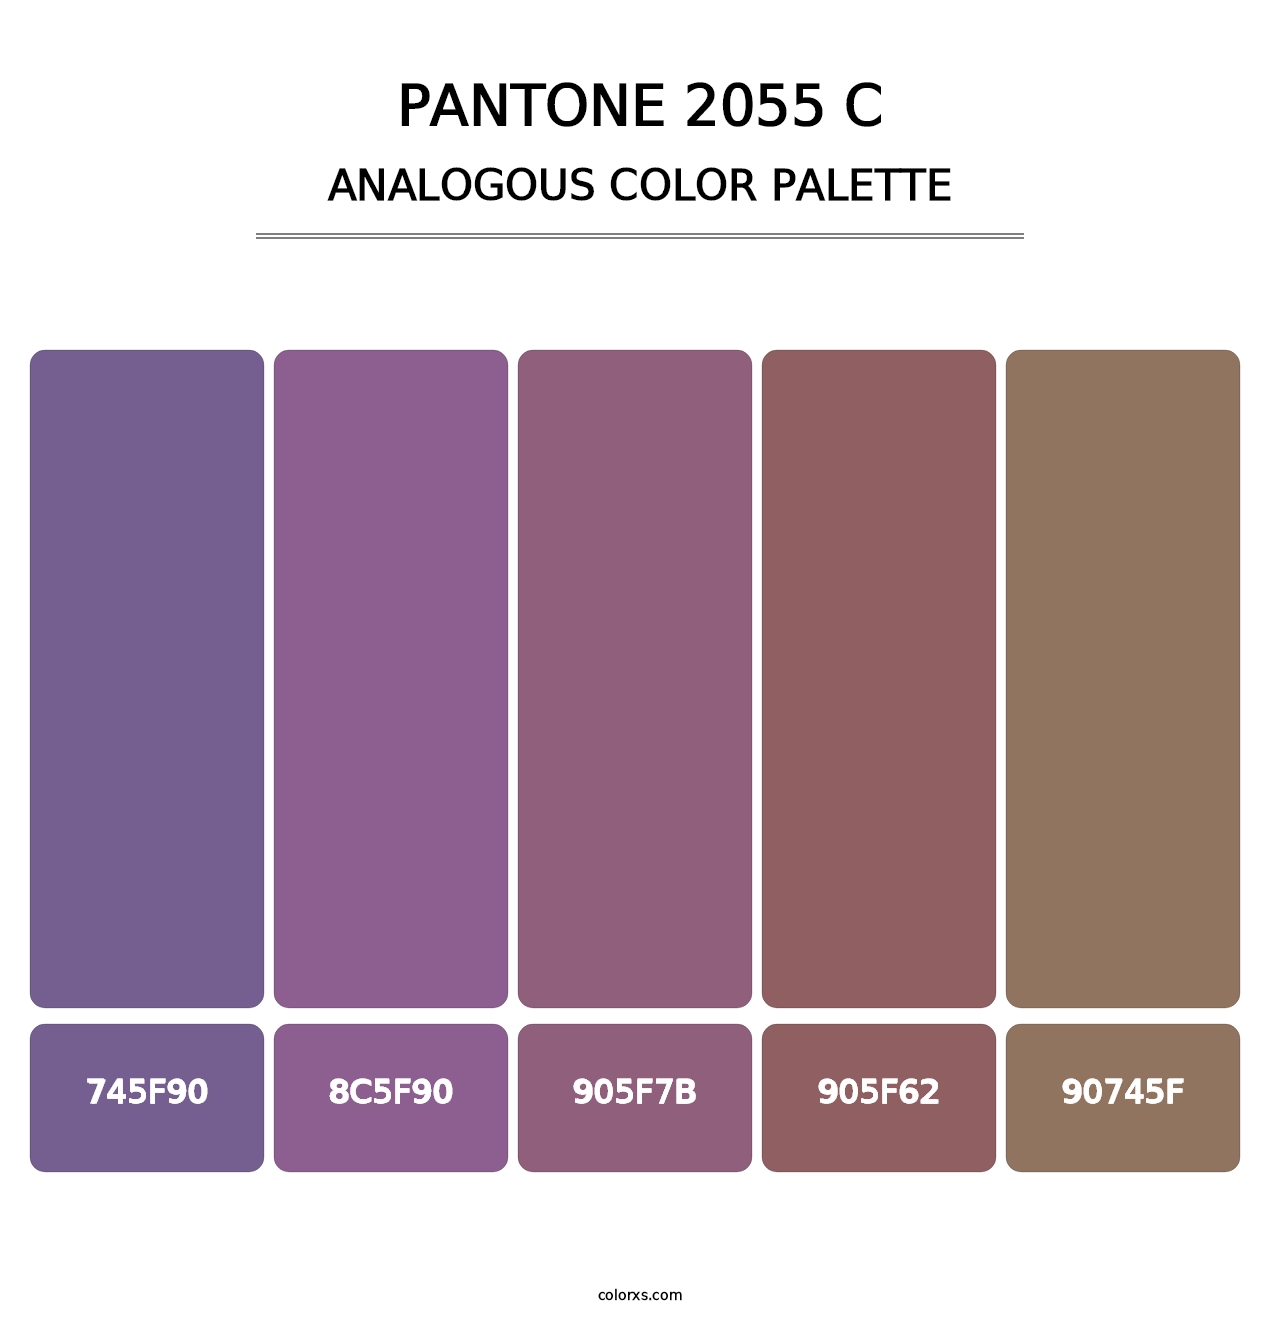 PANTONE 2055 C - Analogous Color Palette